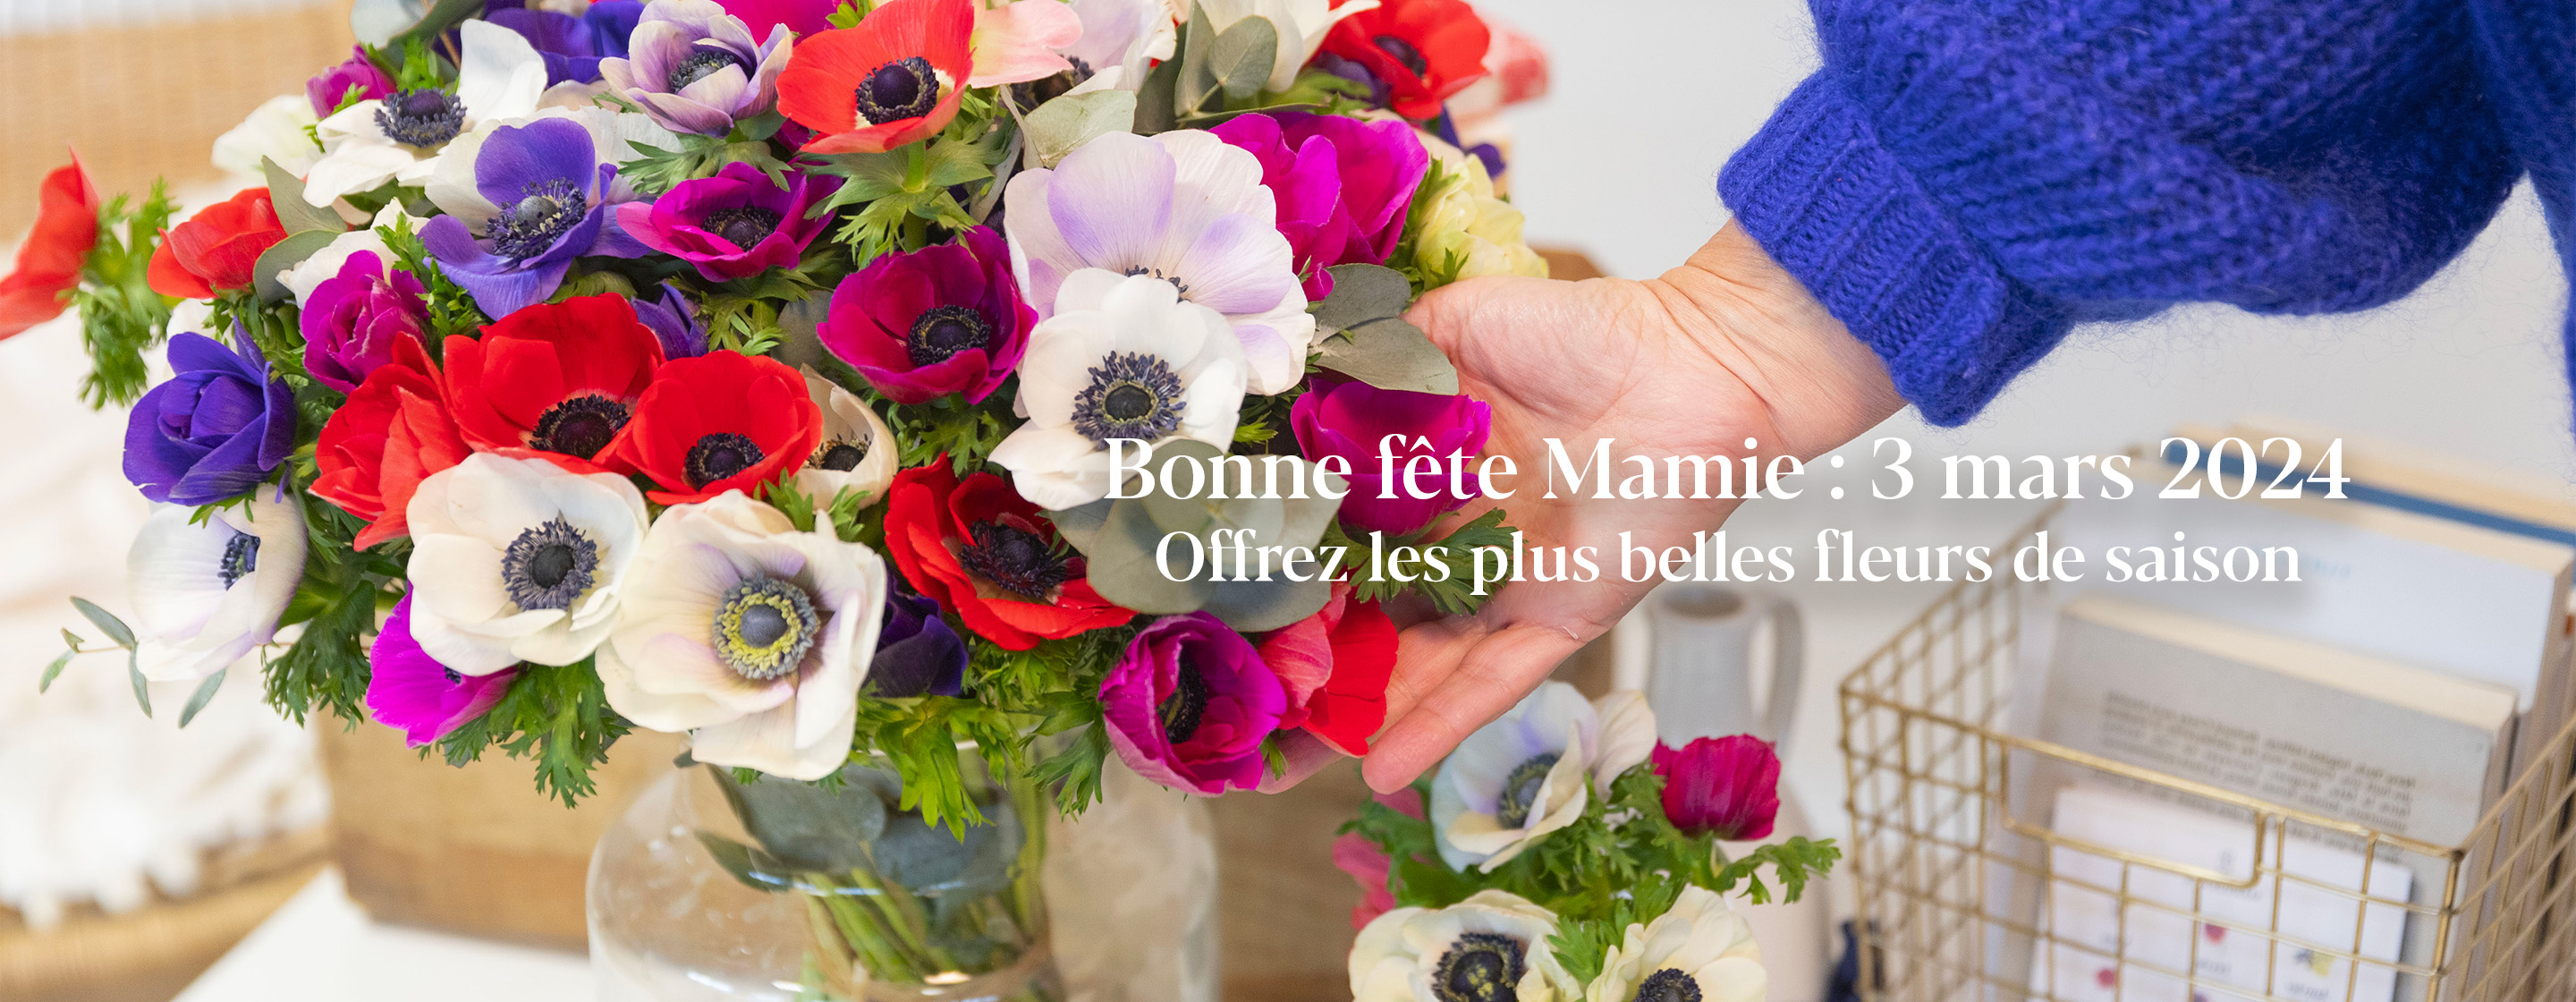 Bonne fête Mamie : 3 mars 2024 Offrez les plus belles fleurs de saison